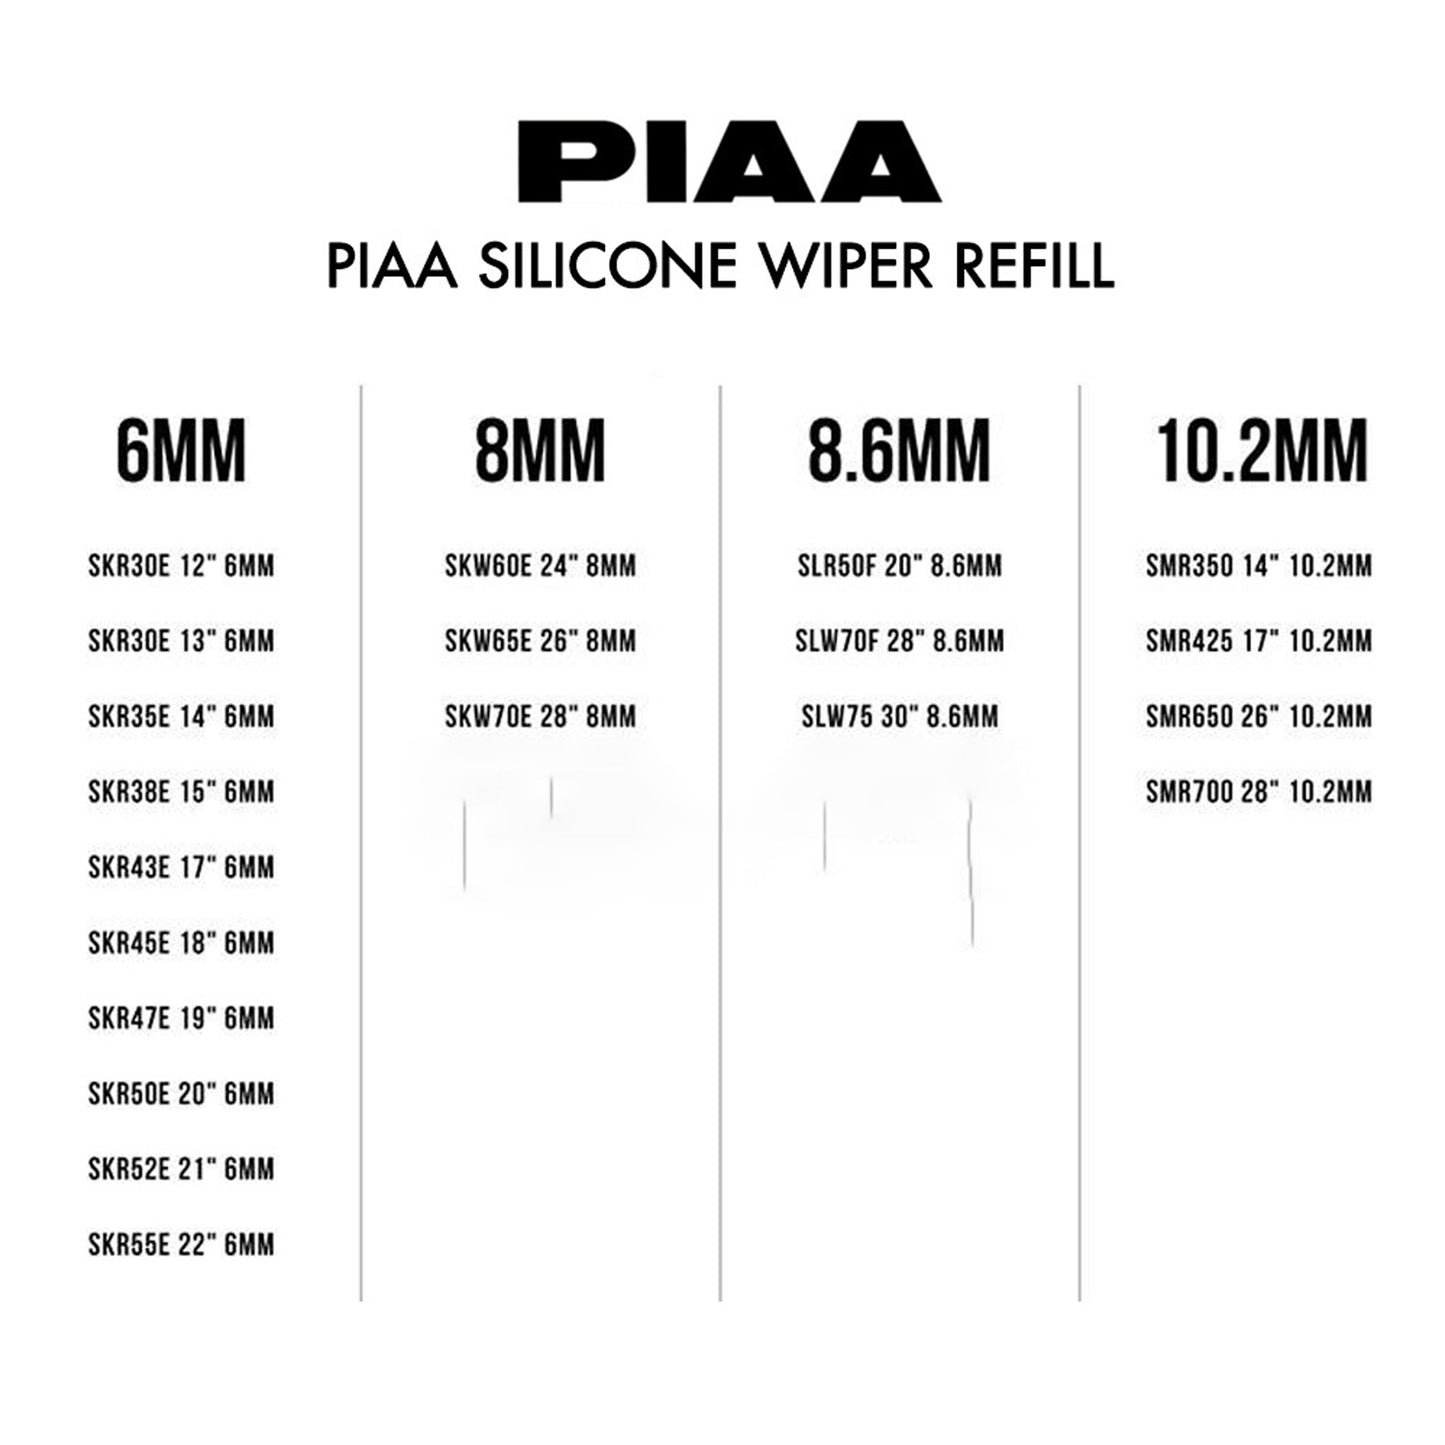 PIAA Silicone Wiper Refill for Uniblade ( 20" ) (Barcode: 4960311379898 )